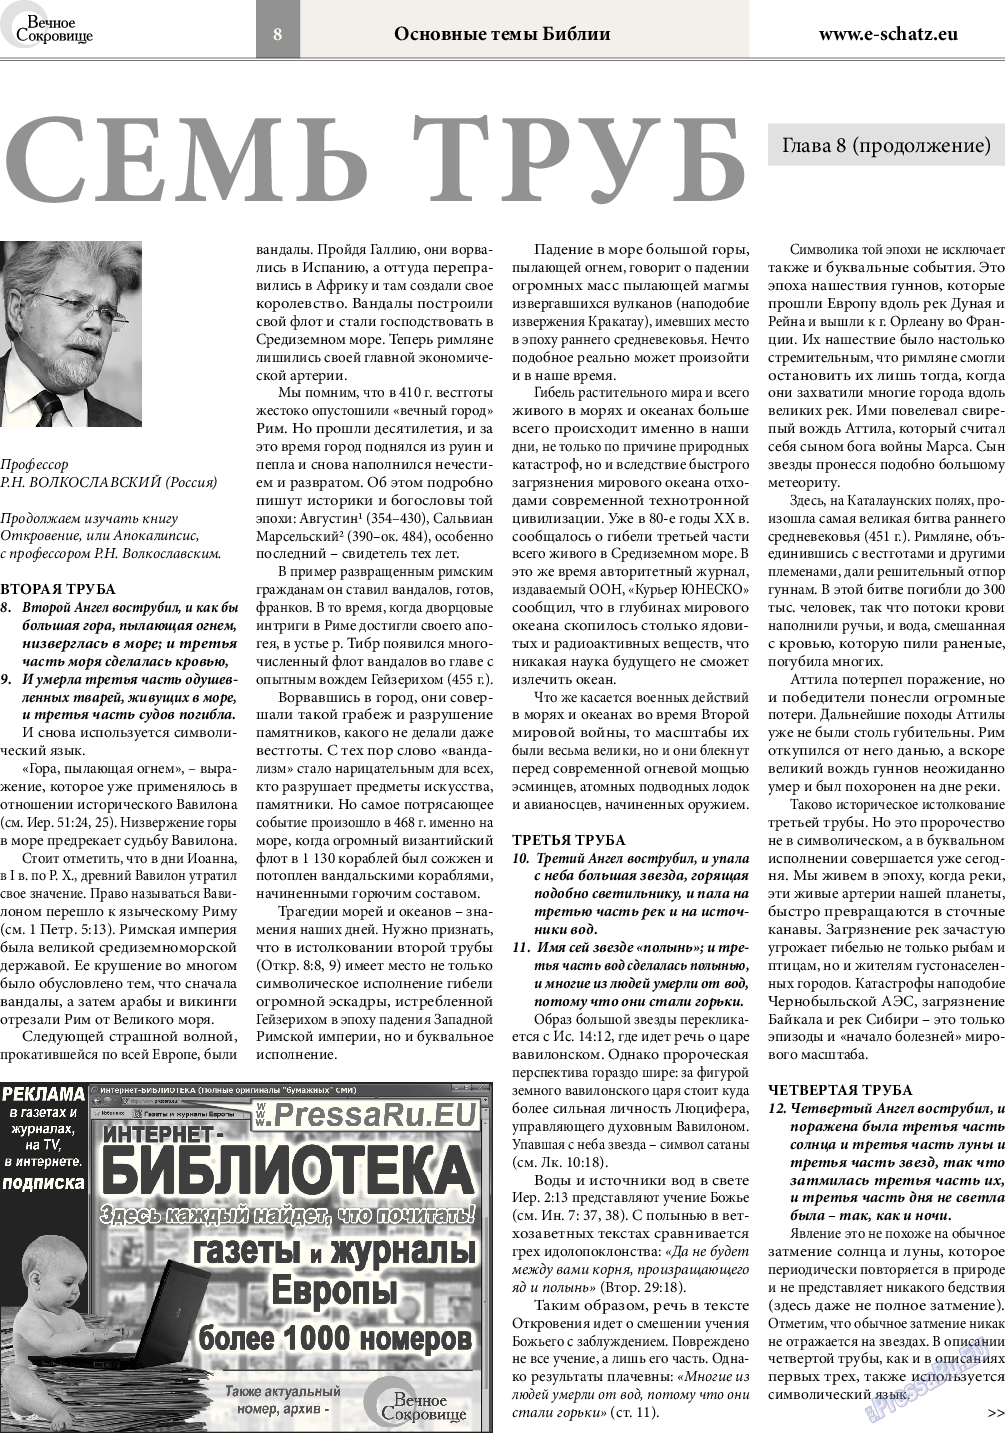 Вечное сокровище (газета). 2015 год, номер 3, стр. 8